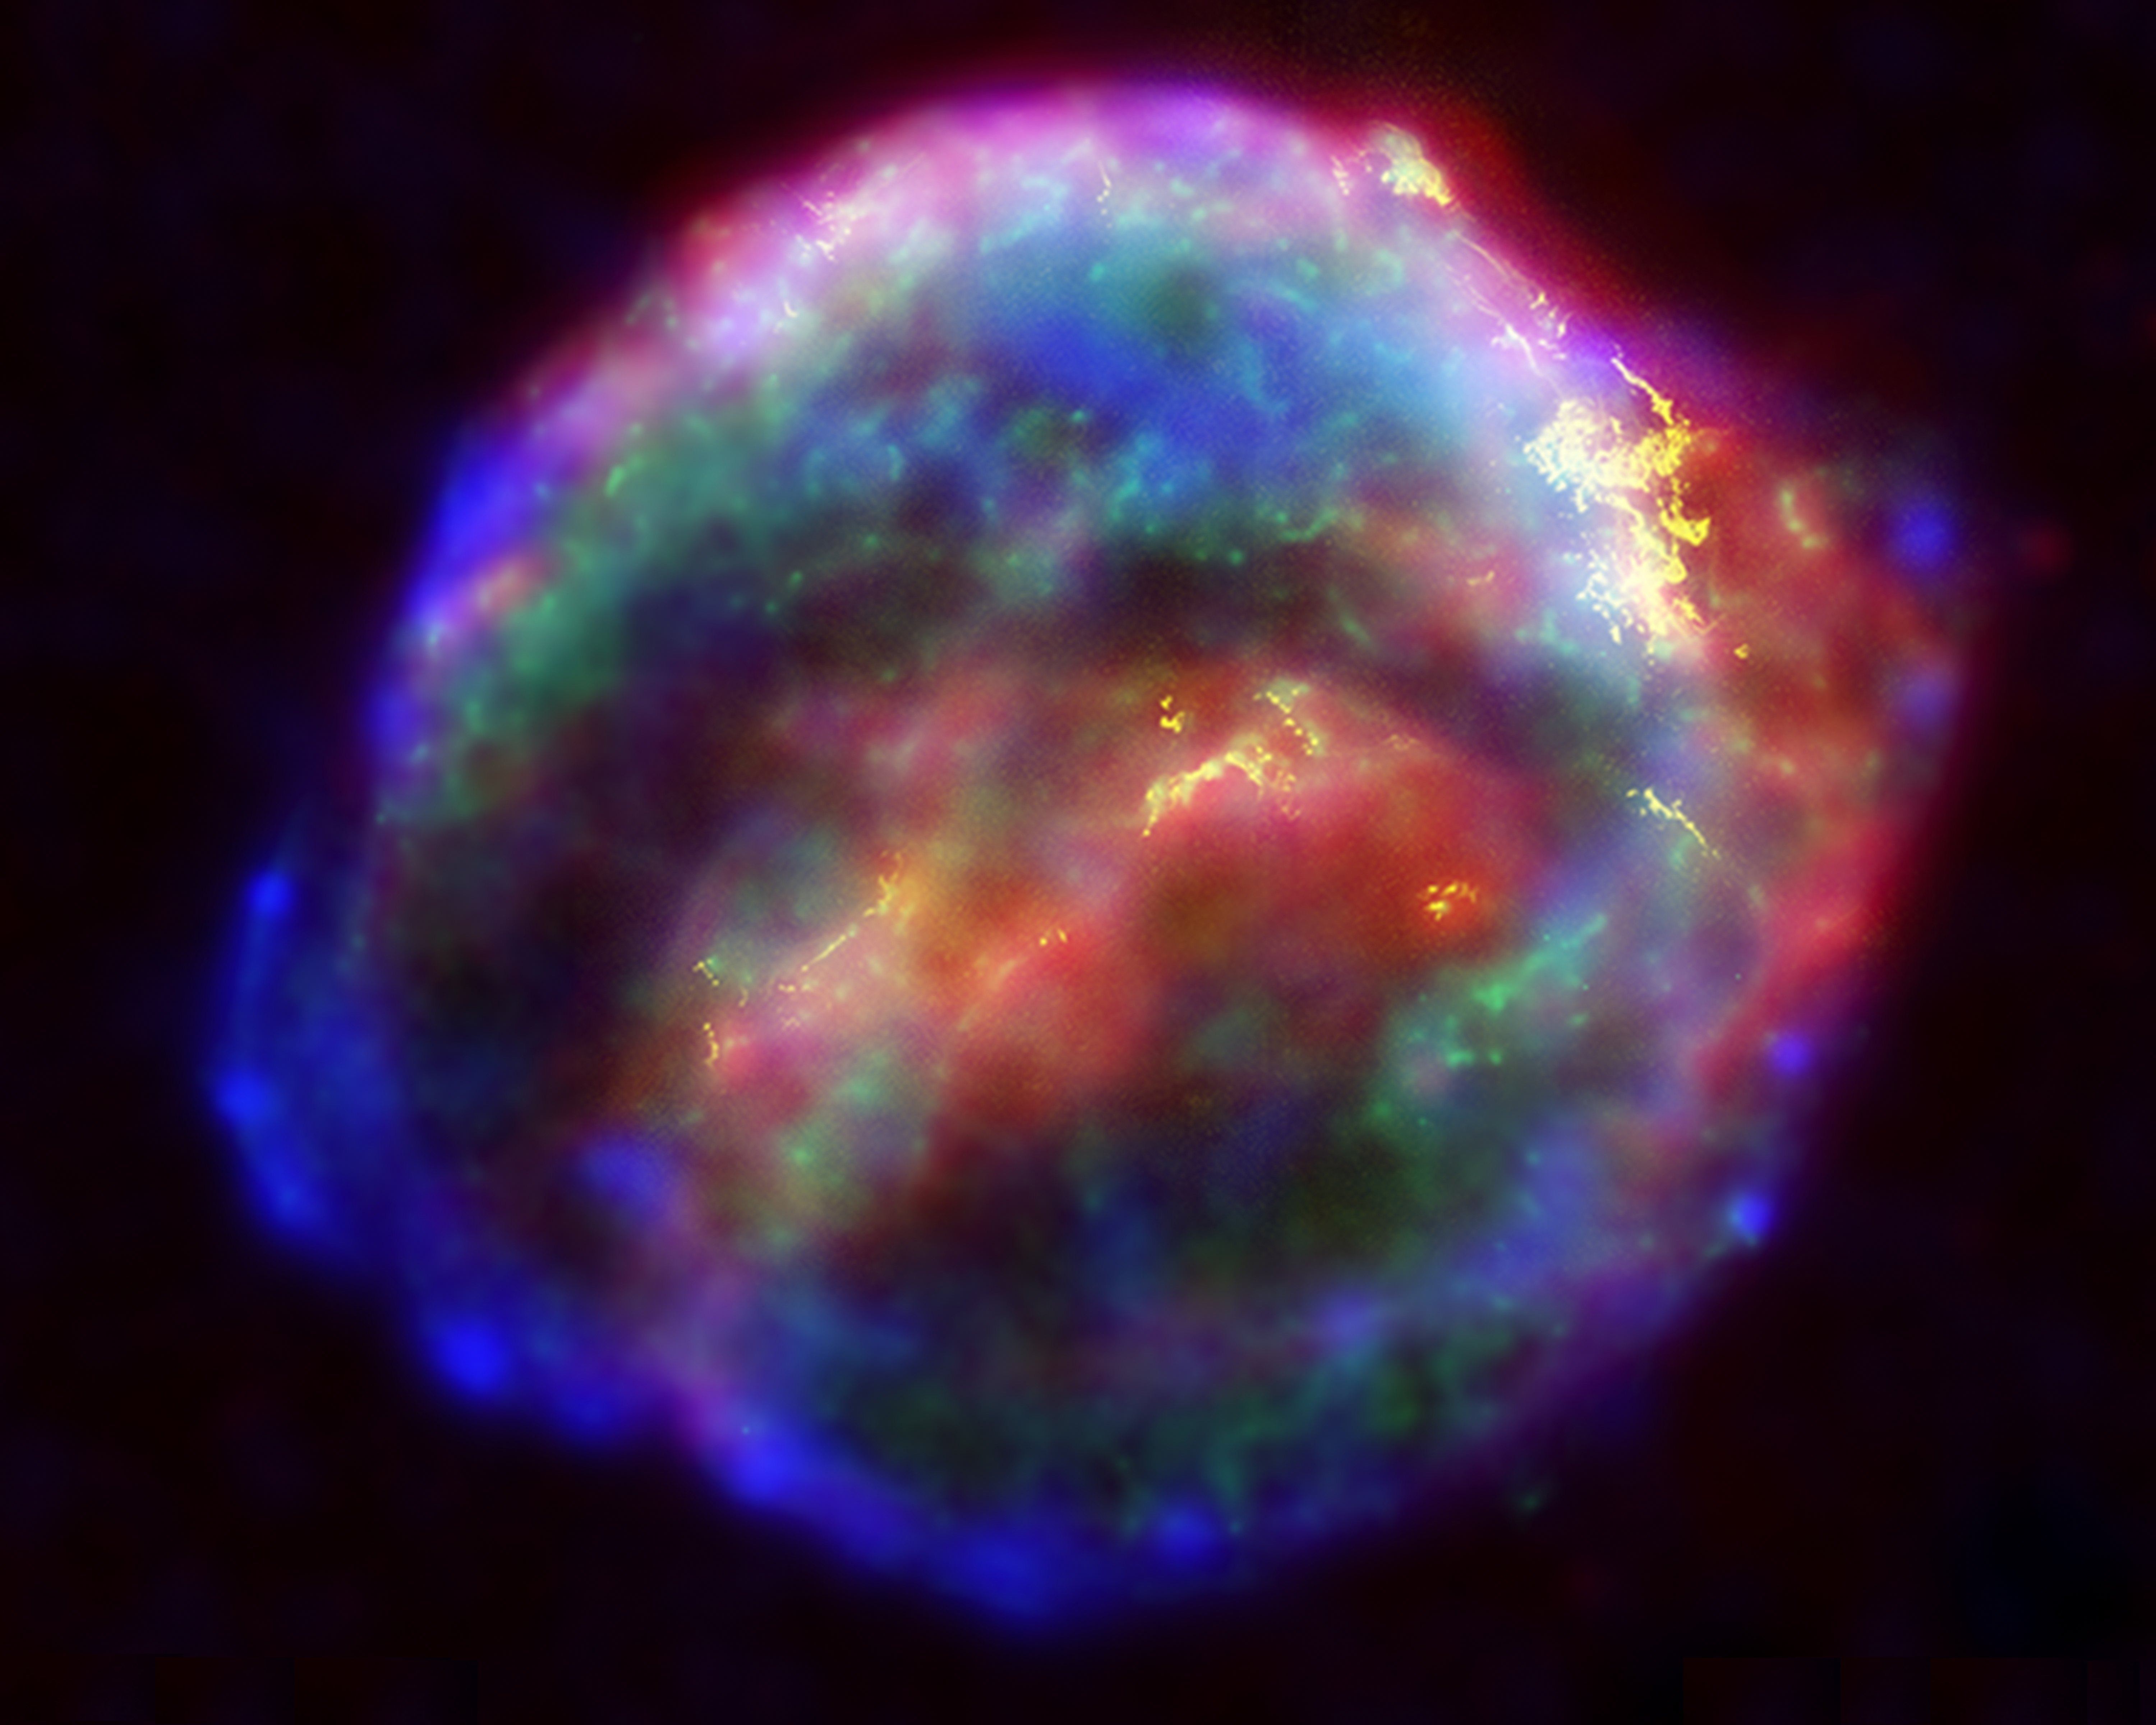 Supernova #13